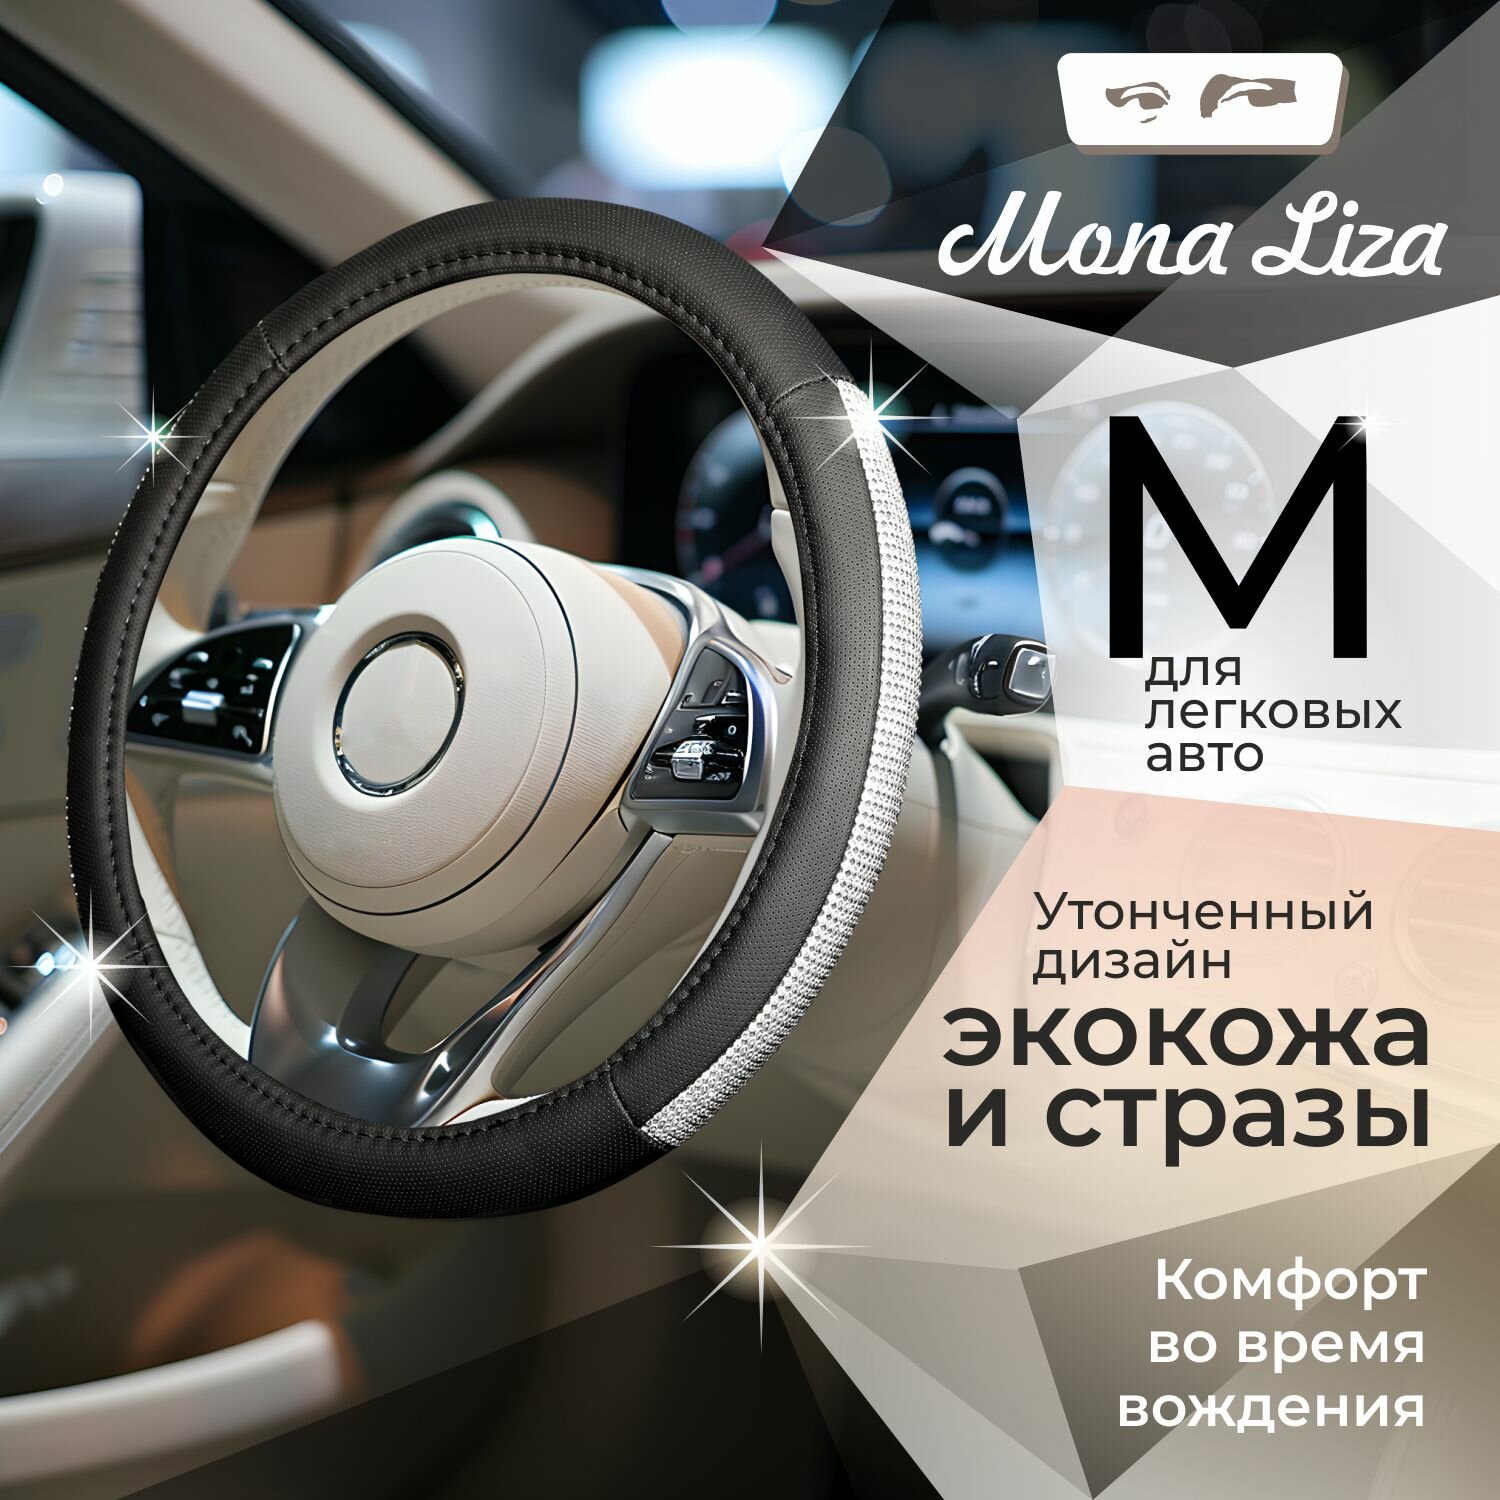 Оплетка на руль MONA LISA Sunshine, чехол на руль автомобиля со стразами, цвет серебро, 38 см